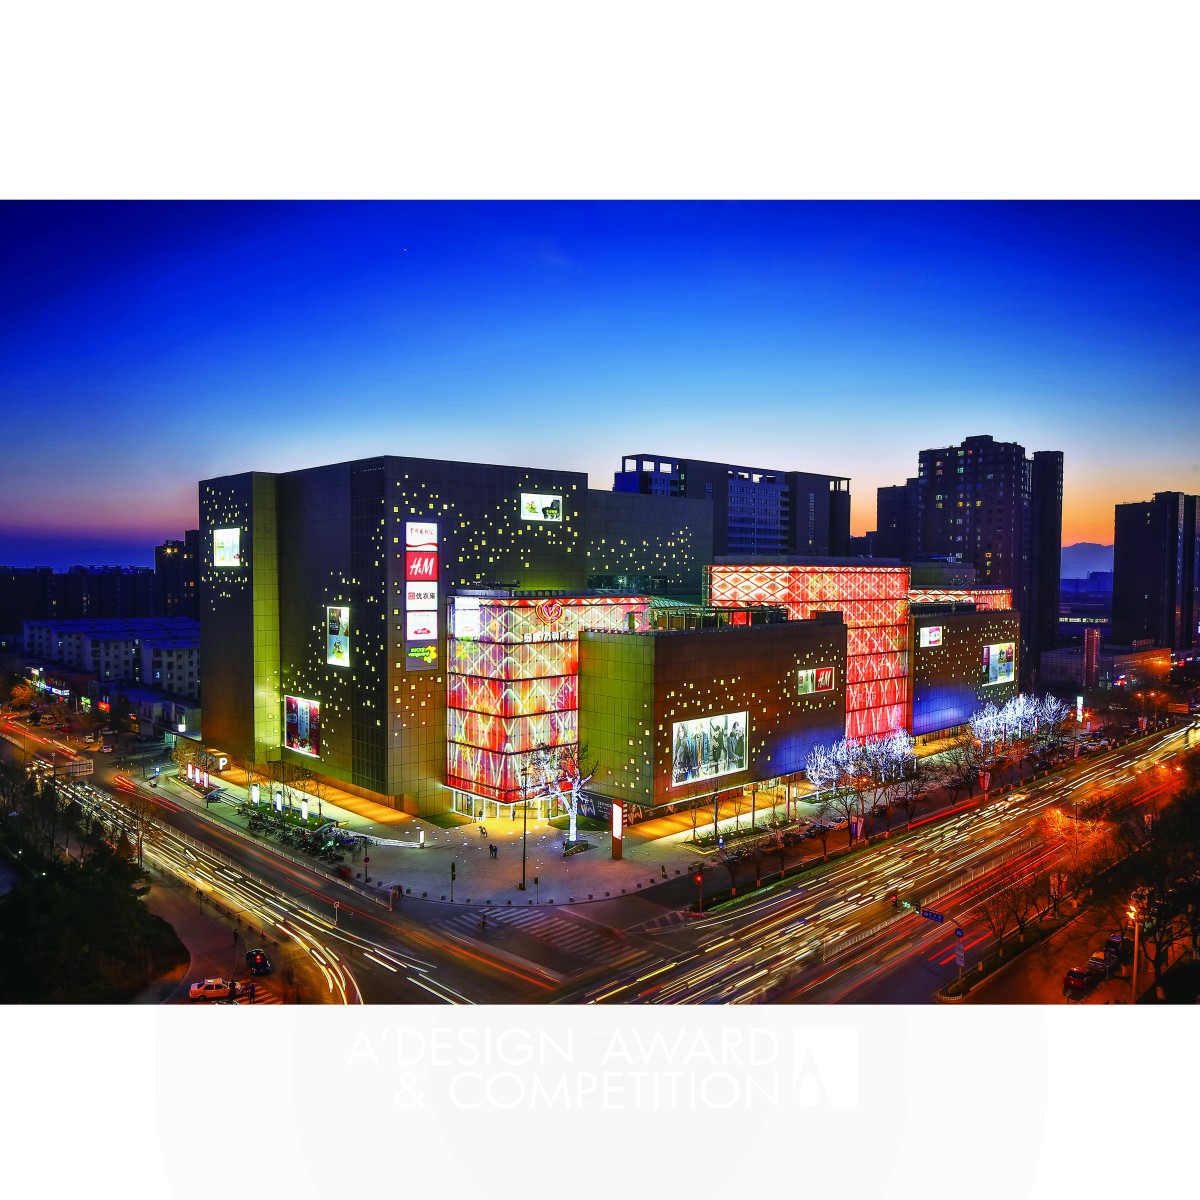 LDPi (China Branch) Retail